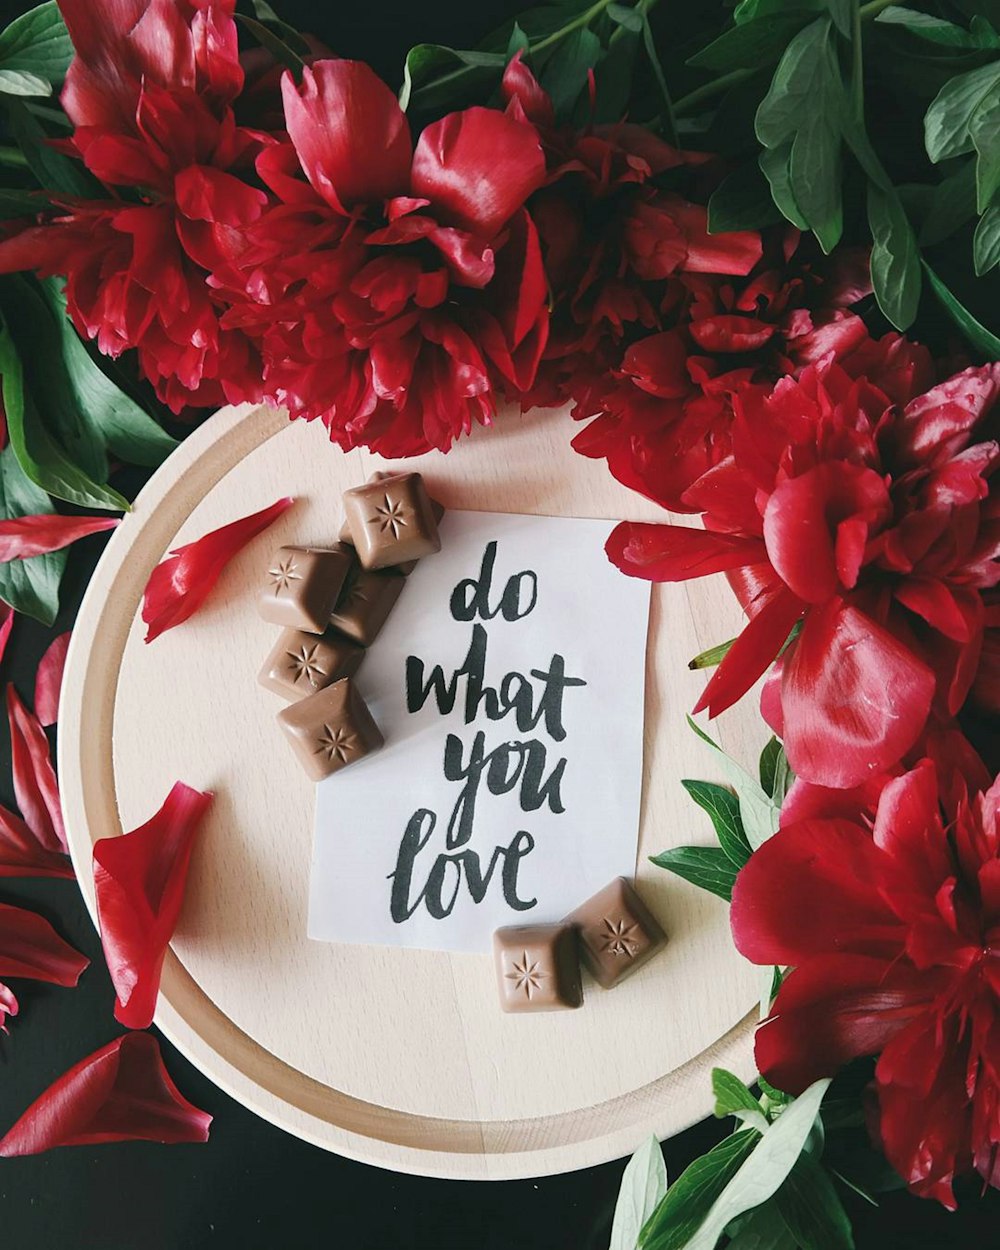 Uma nota em um pedaço de papel em cima de um prato ao lado de flores vermelhas que diz "Faça o que você ama".